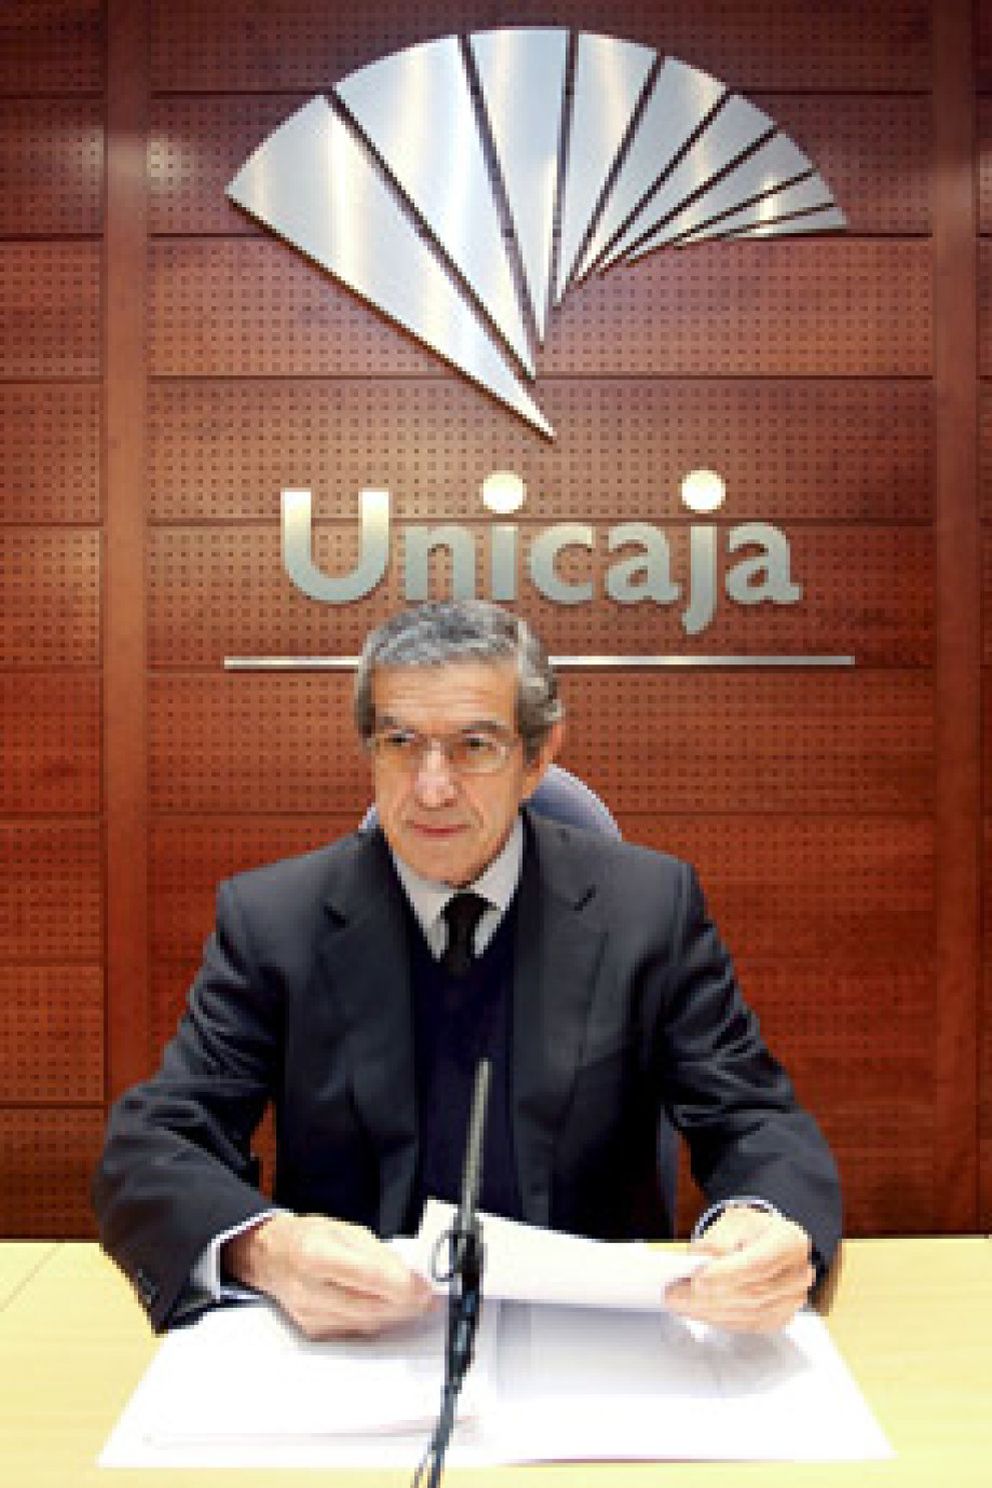 Foto: Medel estará 25 años como presidente de Unicaja gracias a la nueva Ley de Cajas